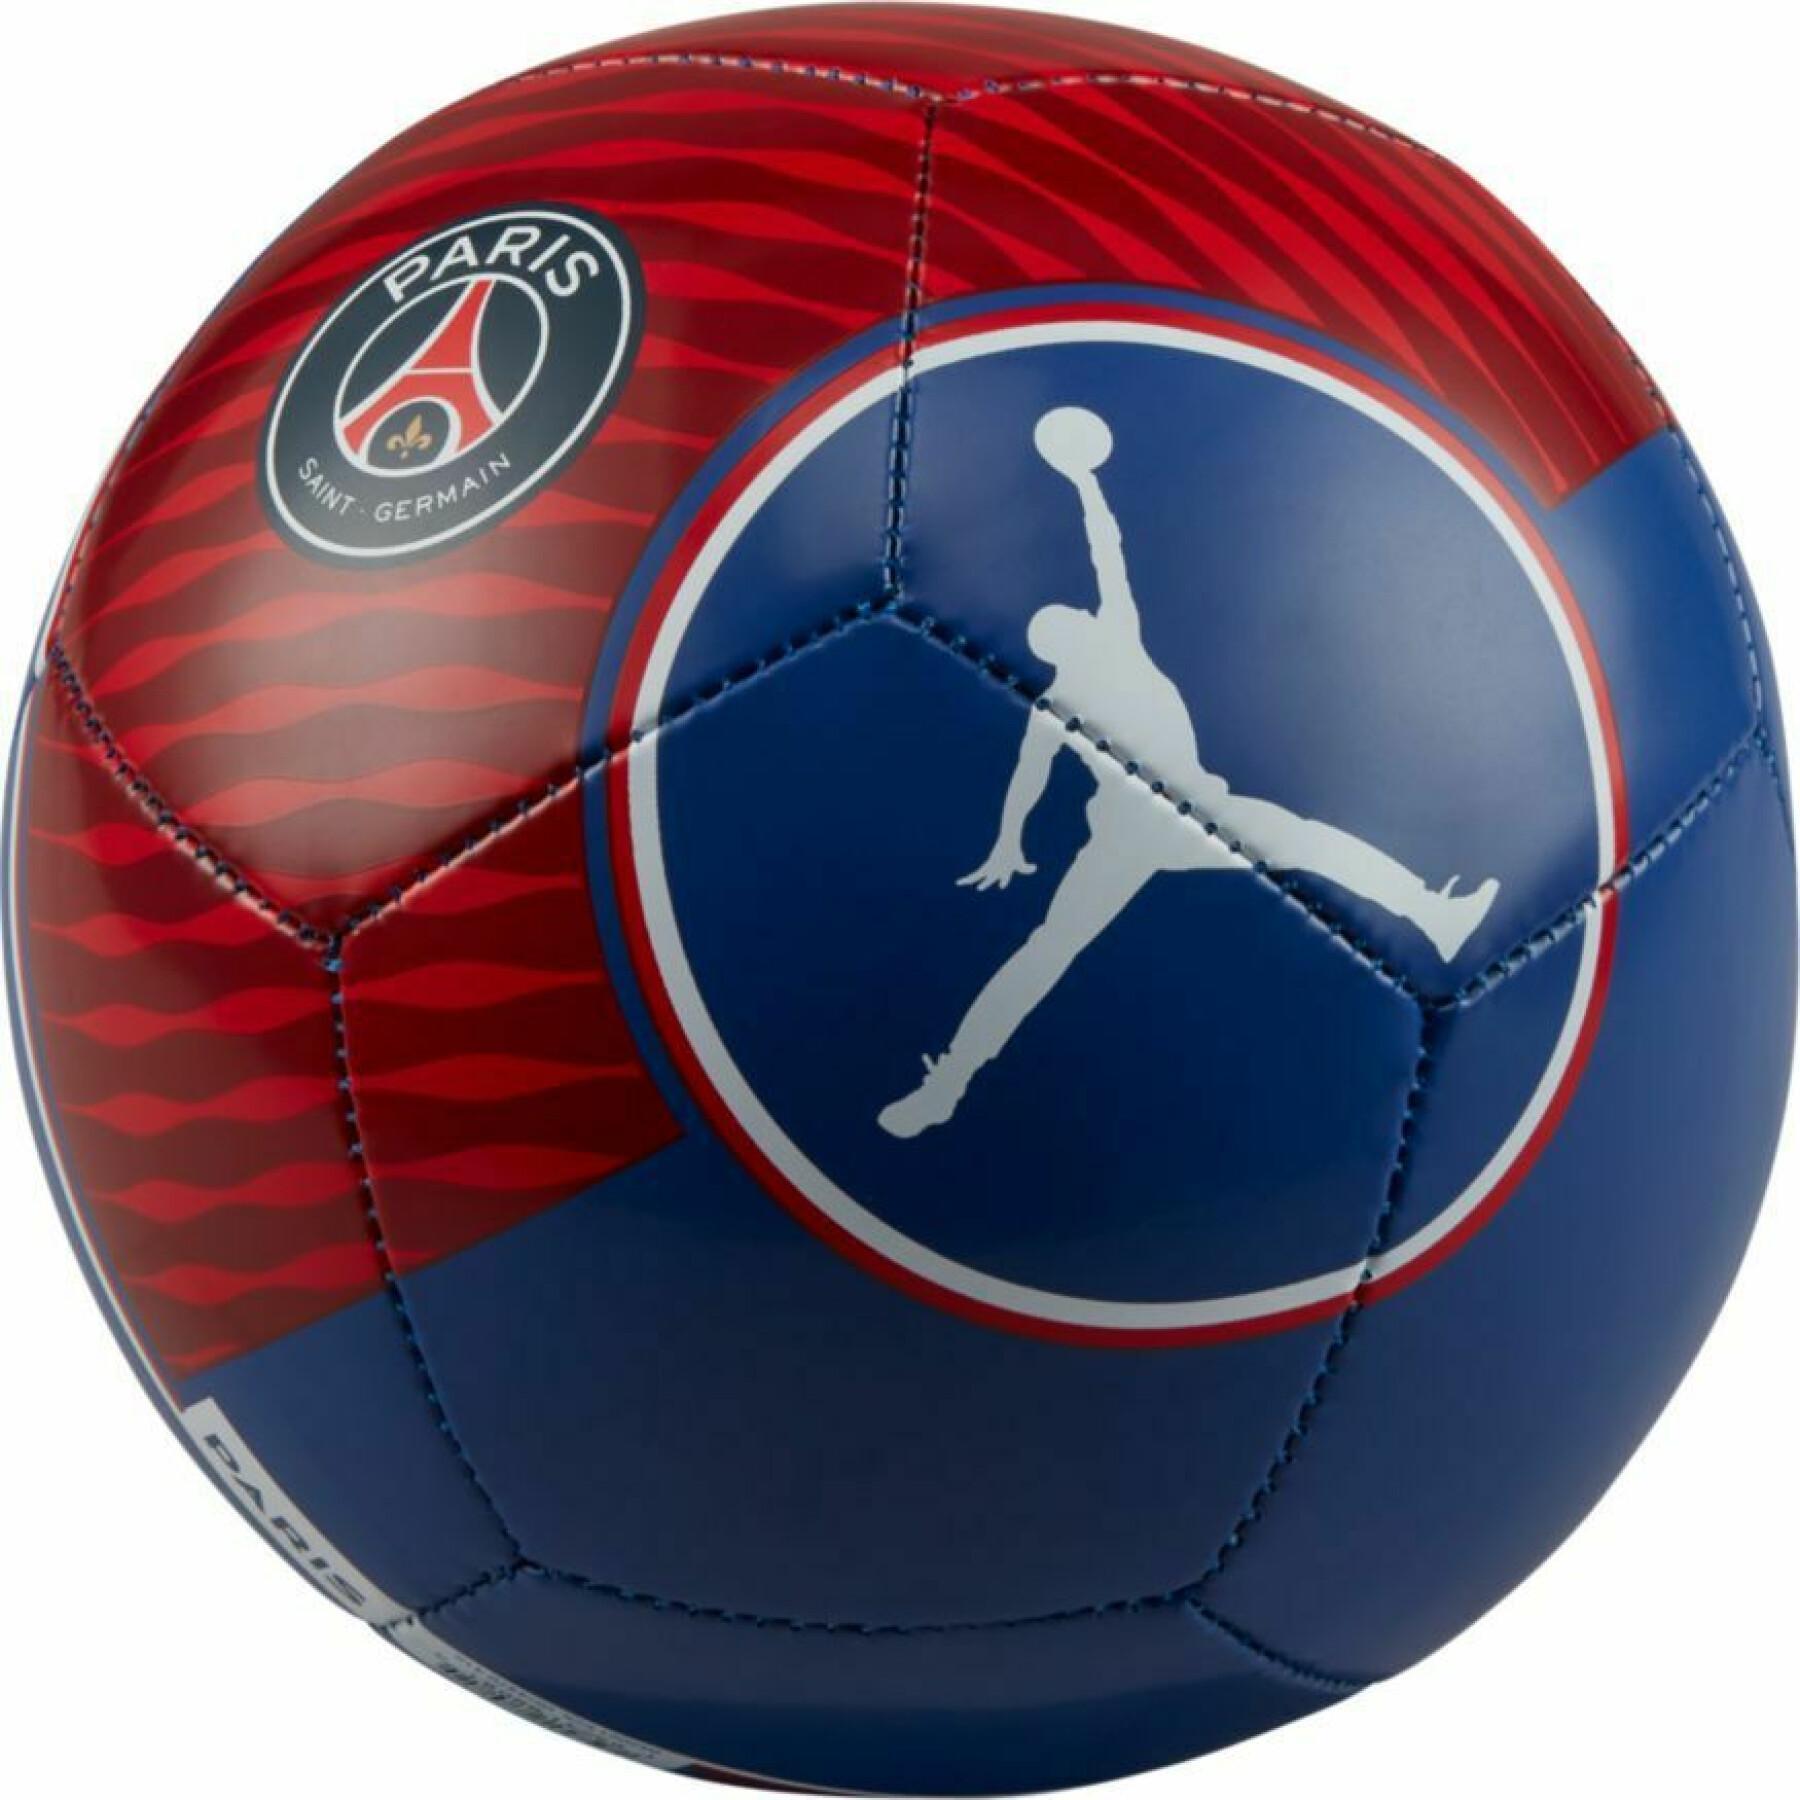 Ballon Jordan x PSG Skills